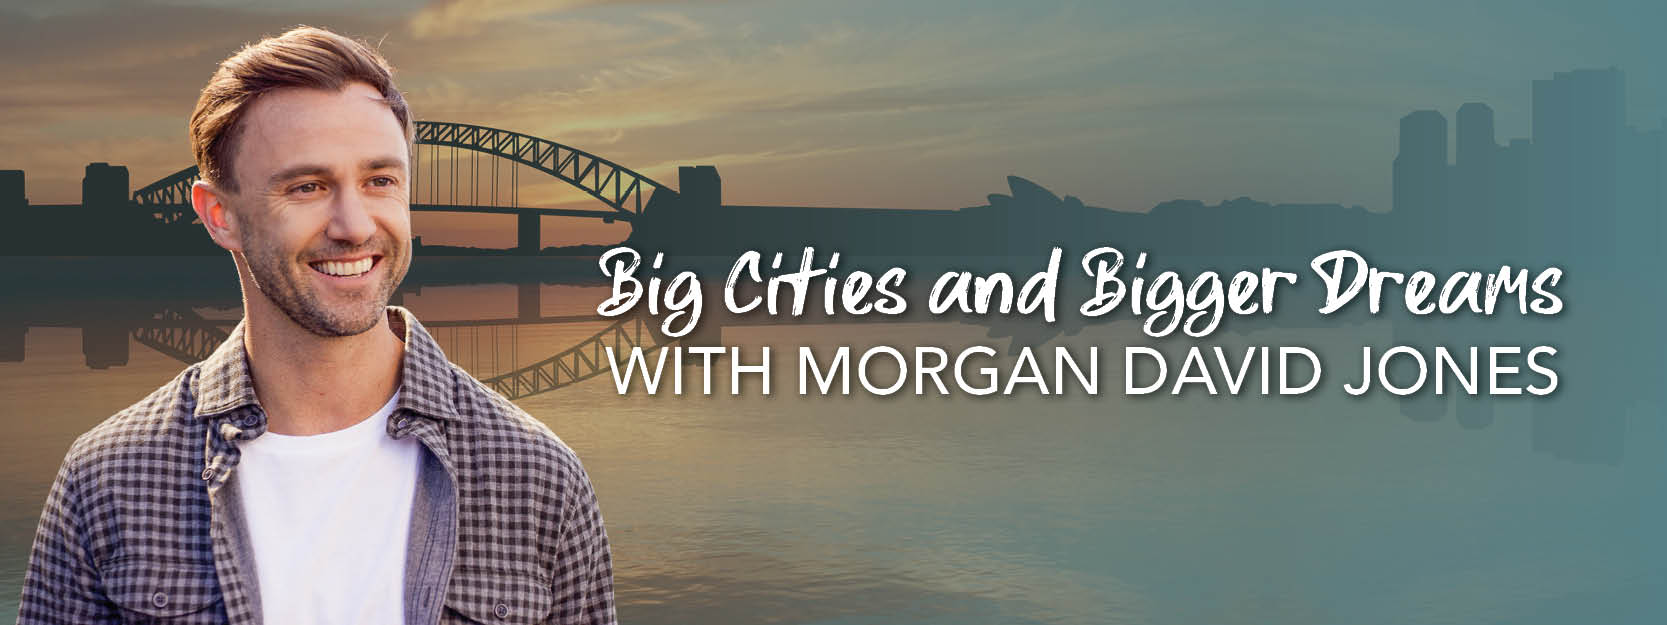 Big Cities and Bigger Dreams with Morgan David Jones